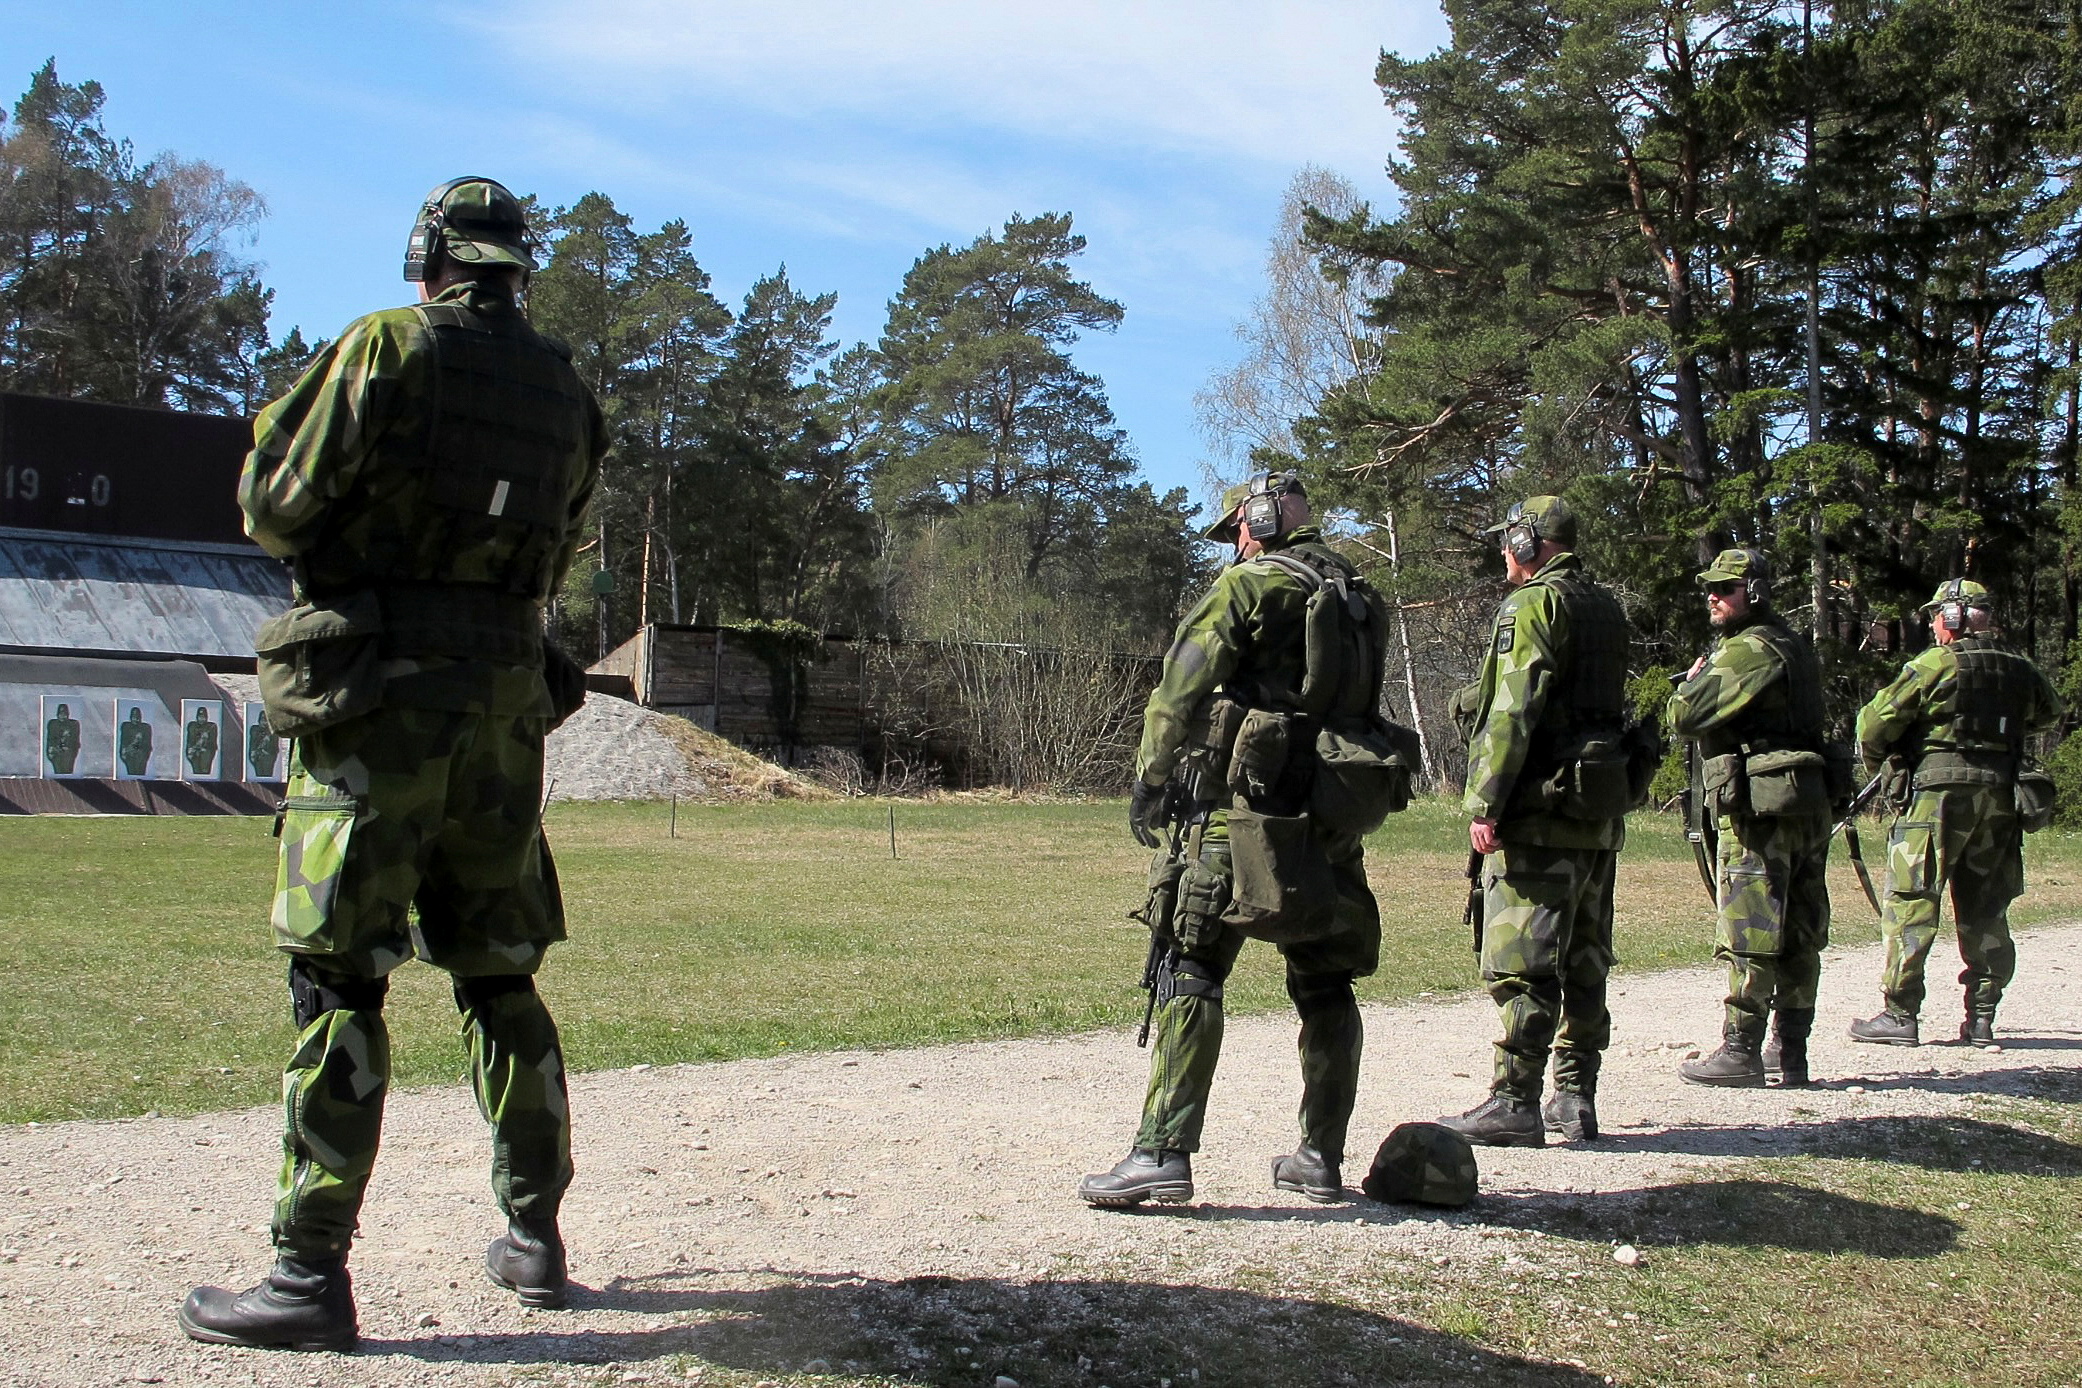 Voluntarios de la Guardia Nacional Sueca practican en un campo de tiro en Gotland, Suecia, el 5 de mayo de 2022. REUTERS/Philip O'Connor